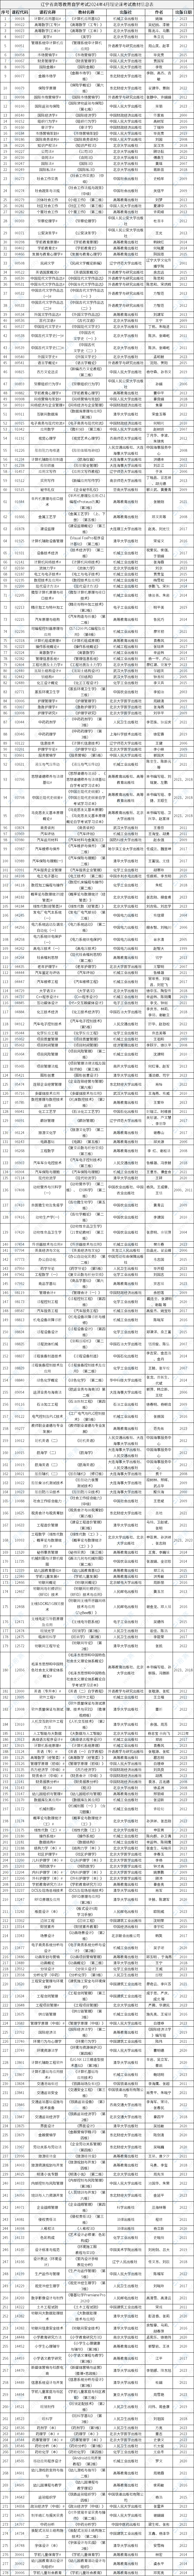 辽宁省高等教育自学考试2024年4月理论课考试教材信息表